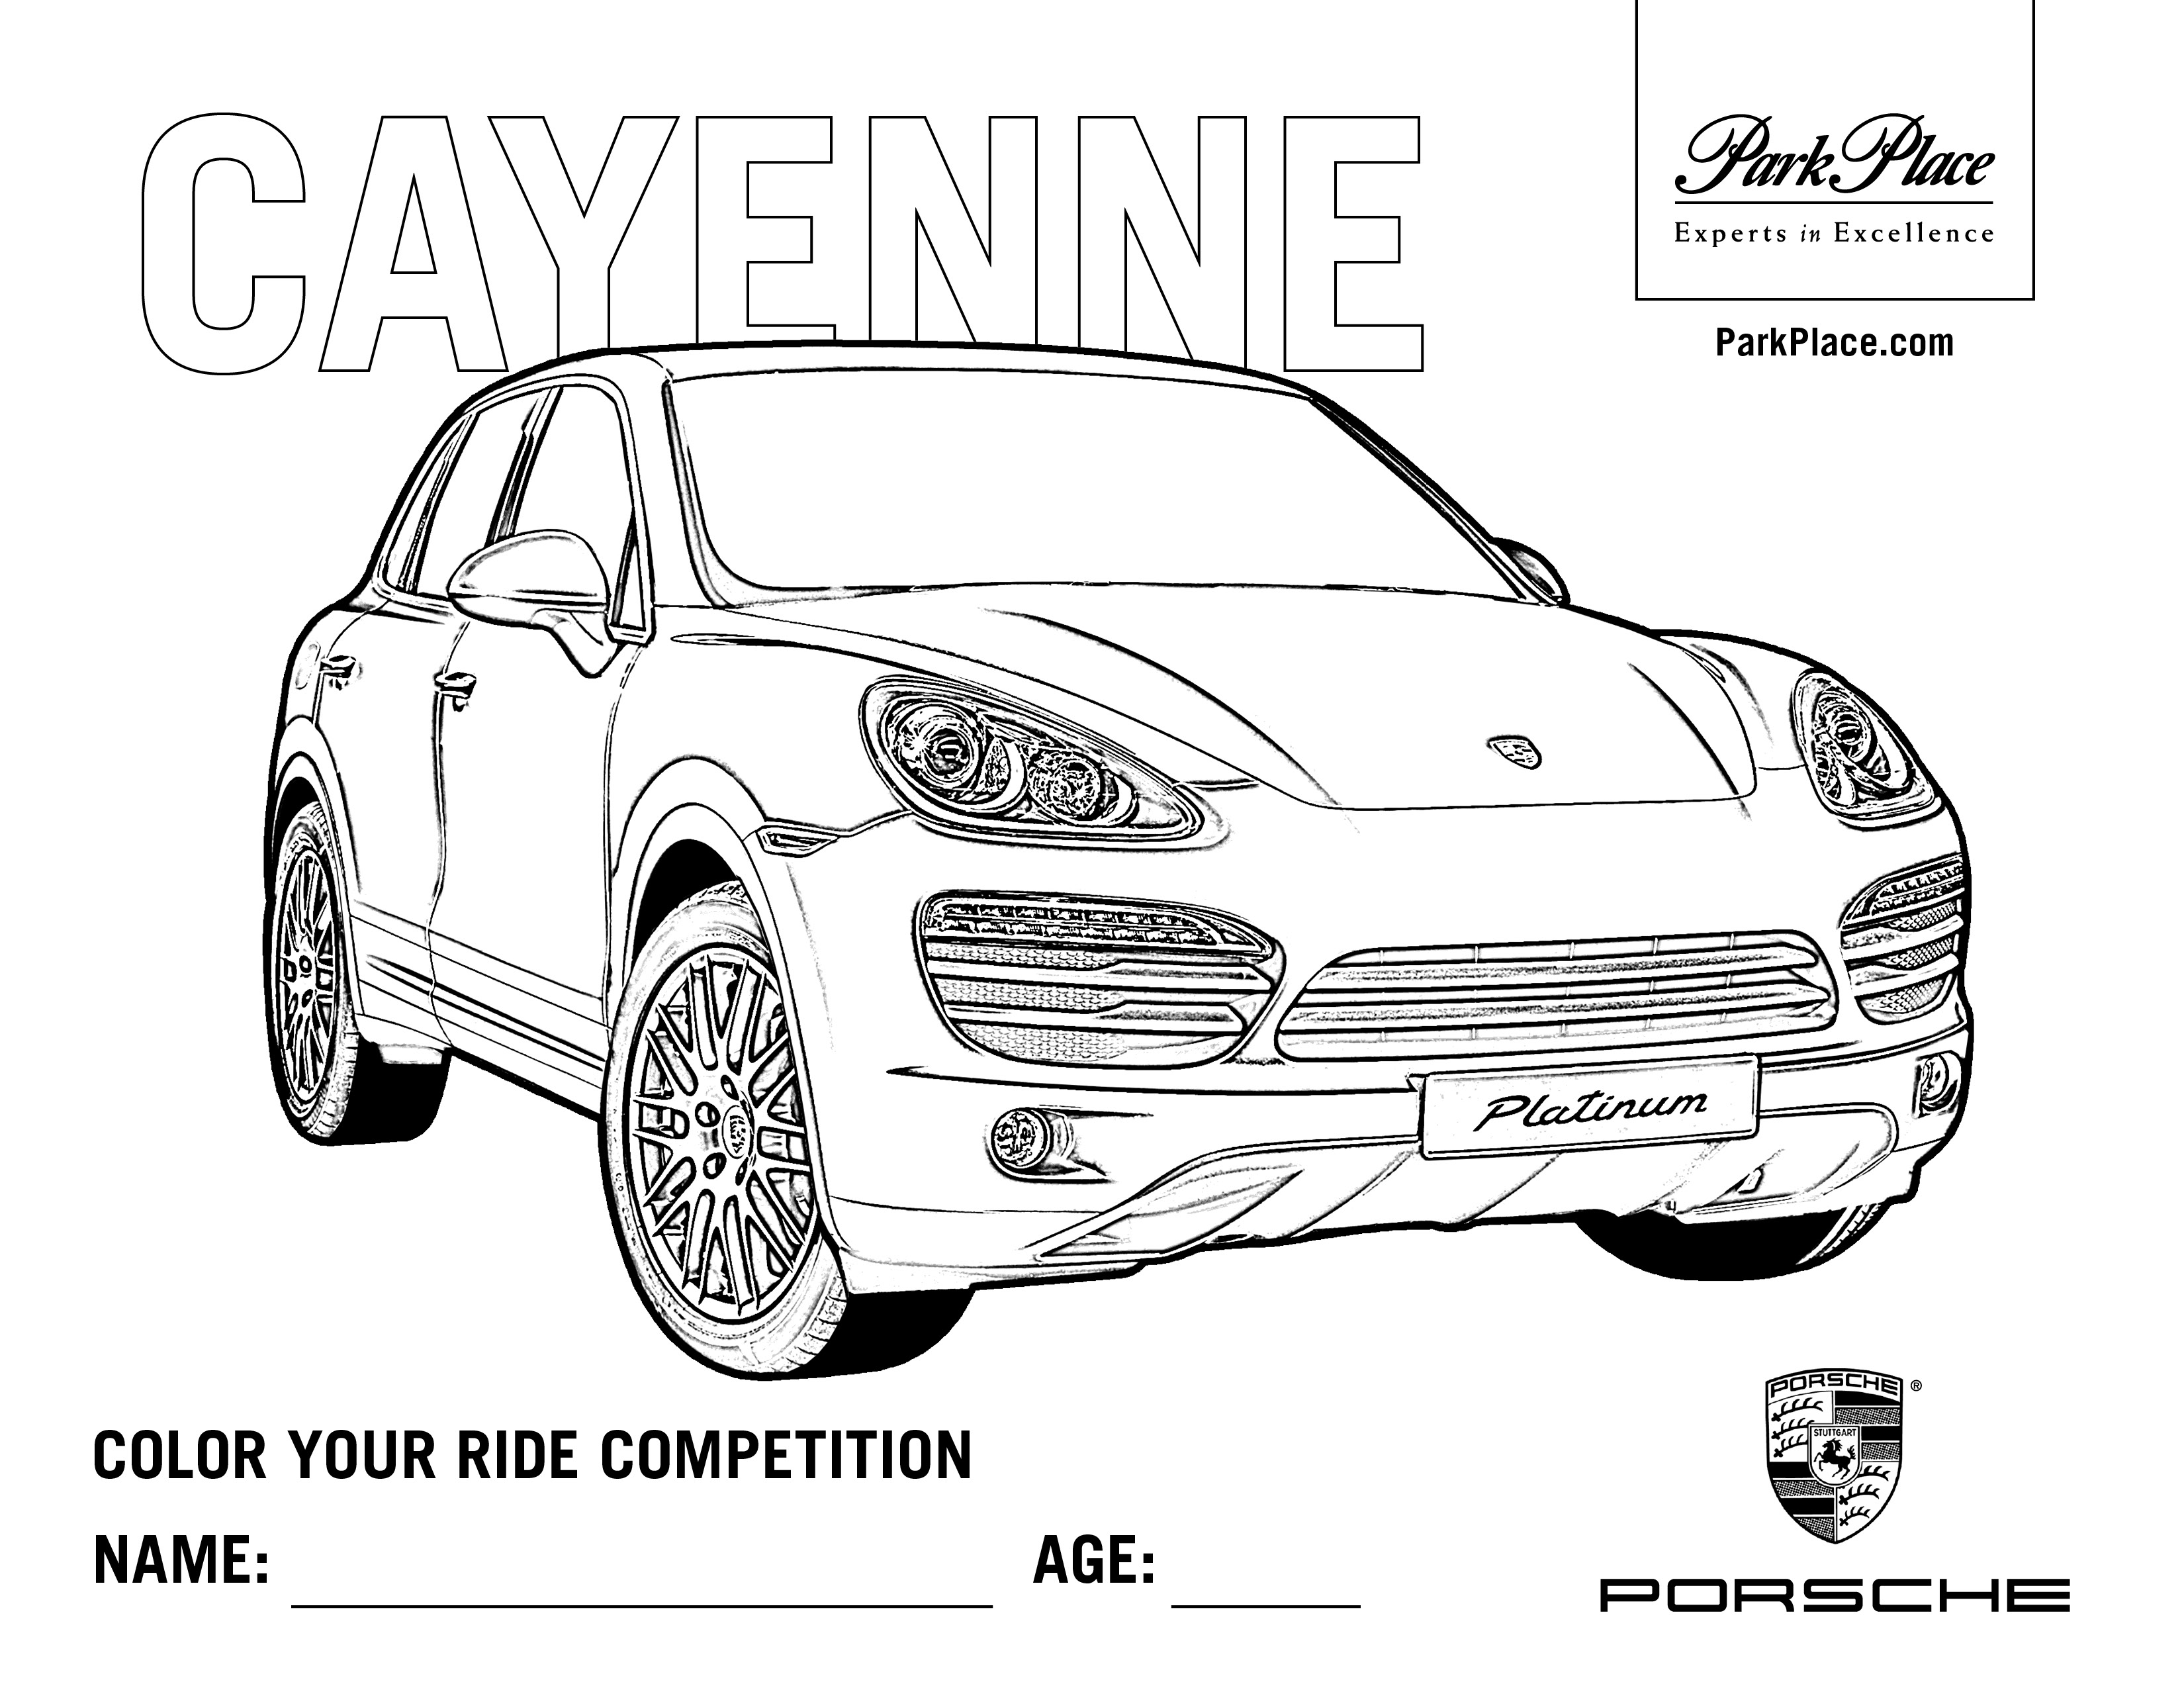 Dessin coloriage Porsche gratuit